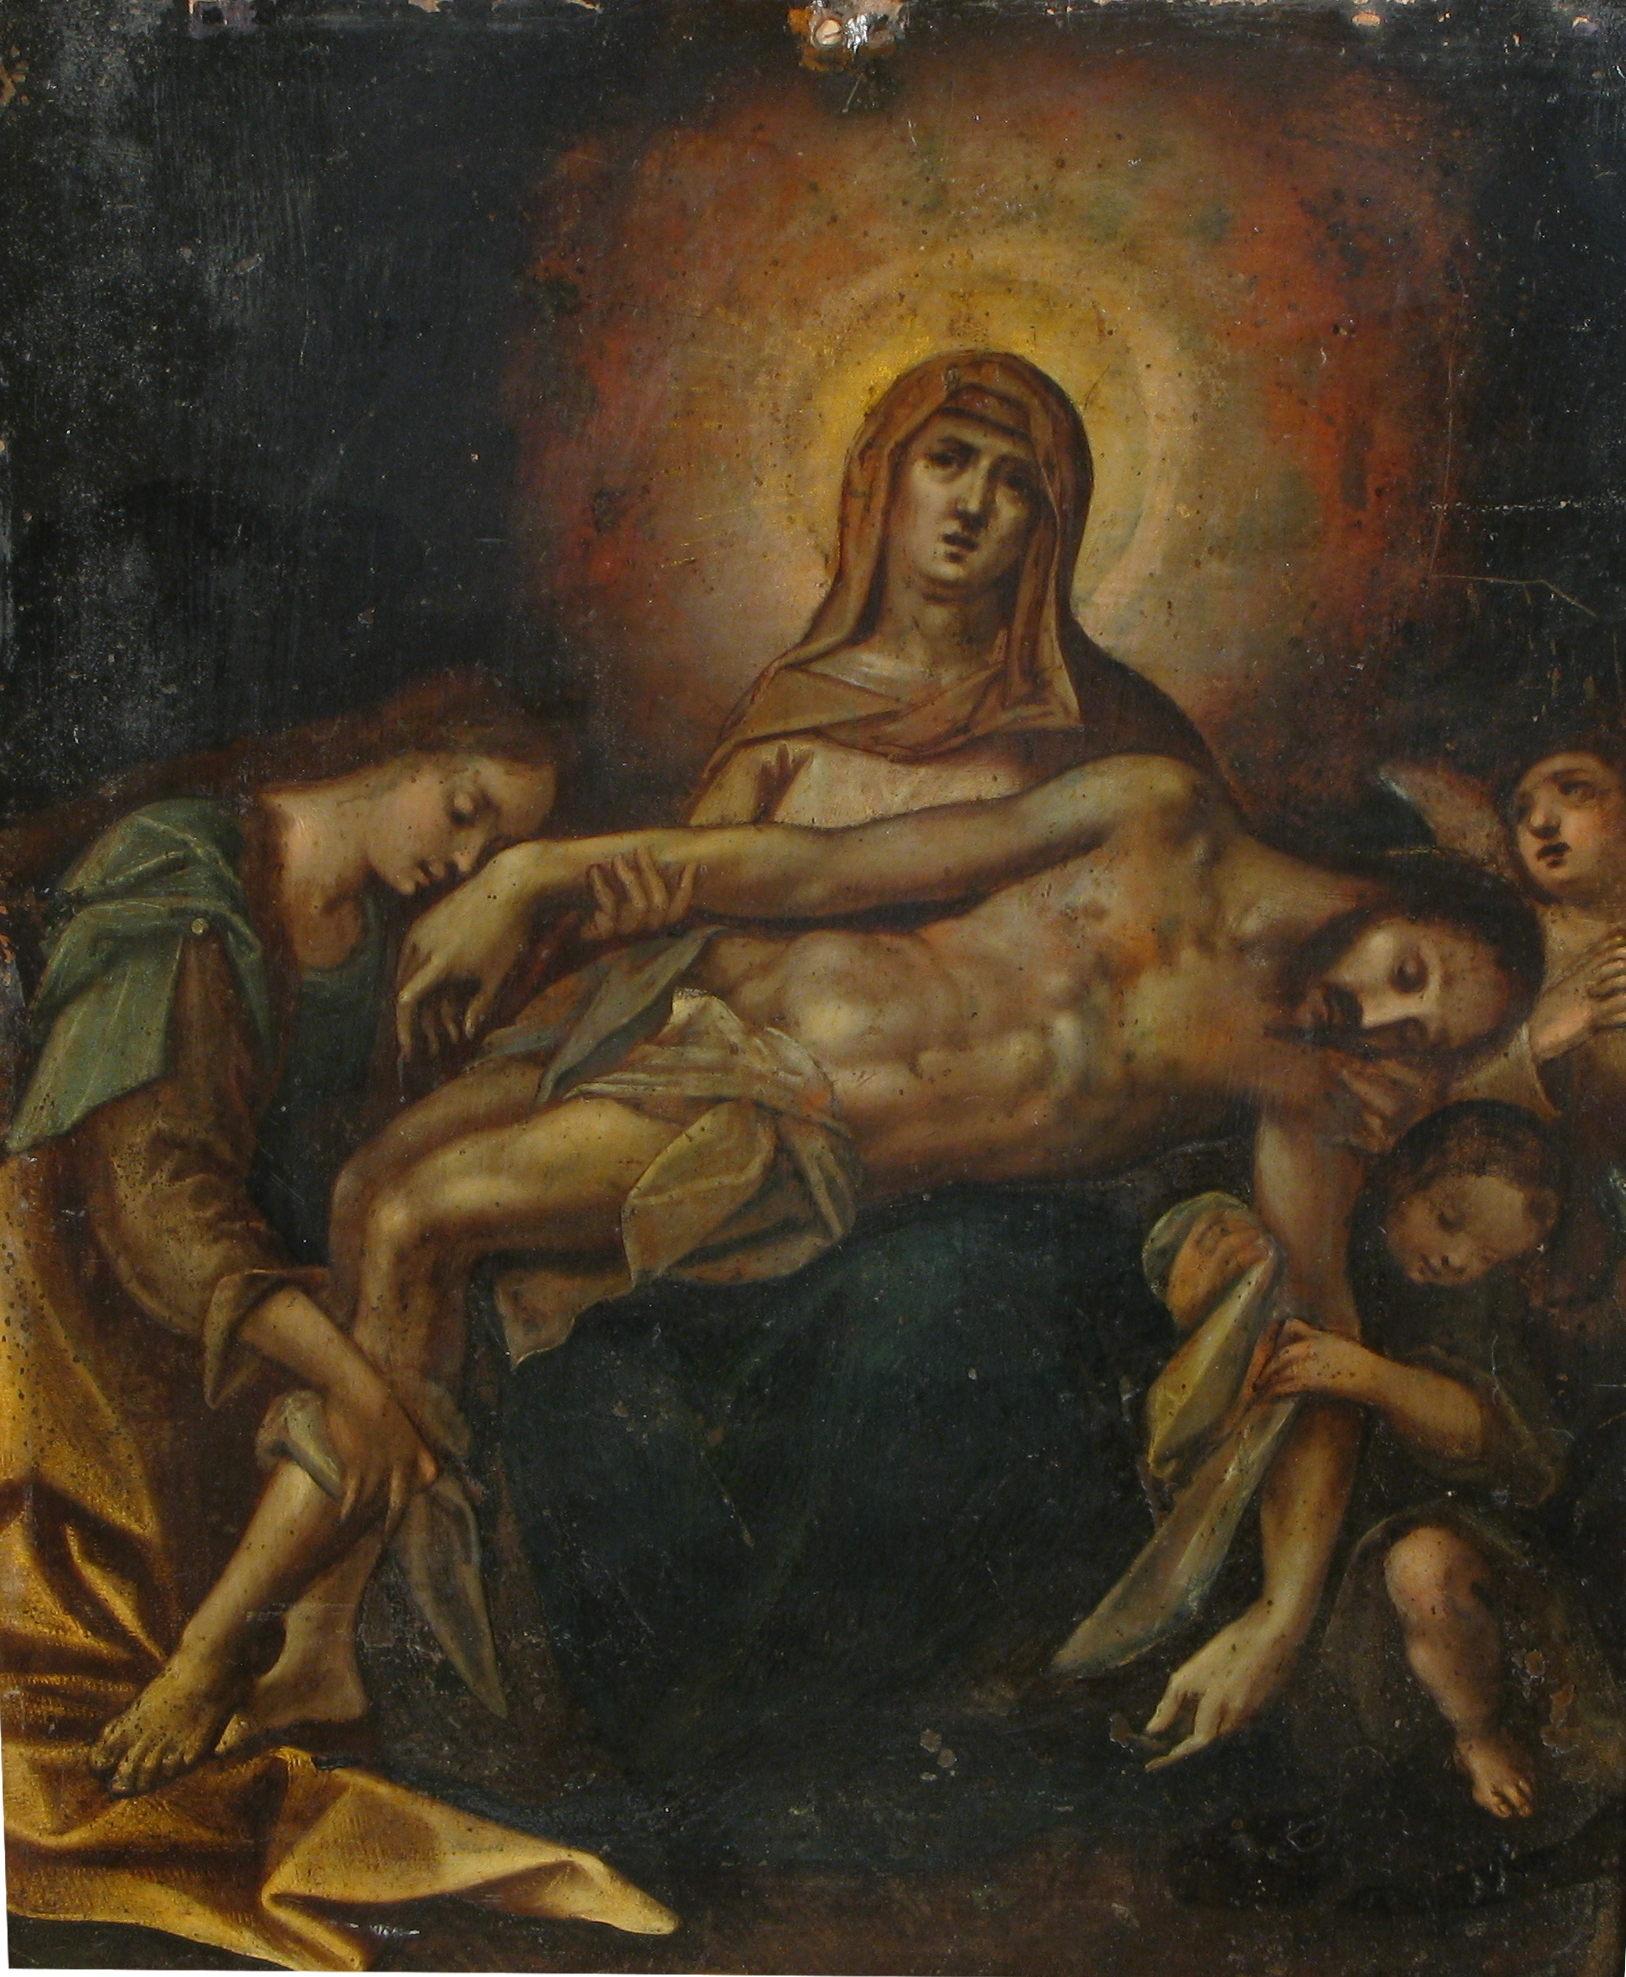 Piéta, peinture à l'huile sur cuivre,  Italie du Nord, XVIIe siècle

Au premier plan se trouve le Christ mort, sans vie et couché mollement sur les genoux de Marie, soutenu et adoré par une femme qui, agenouillée sur le côté gauche de la